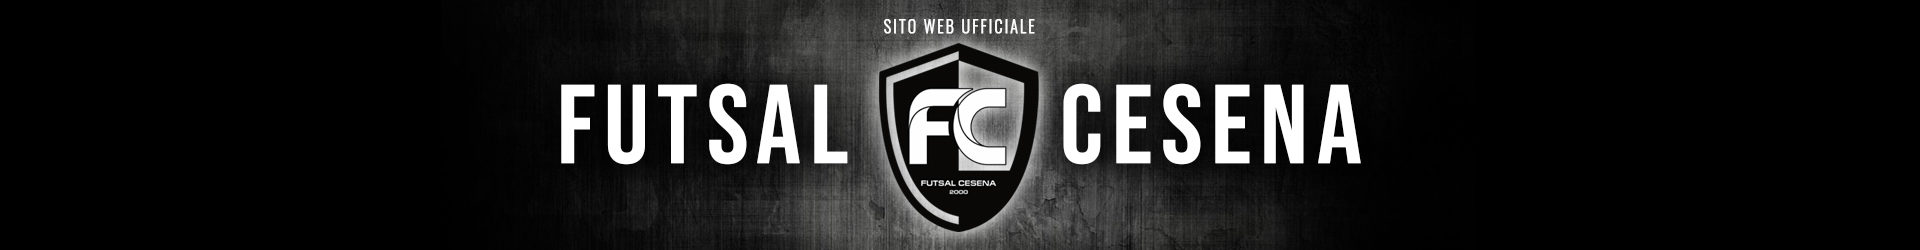 PRE PARTITA: Futsal Cesena-Forlì (Coppa Italia)